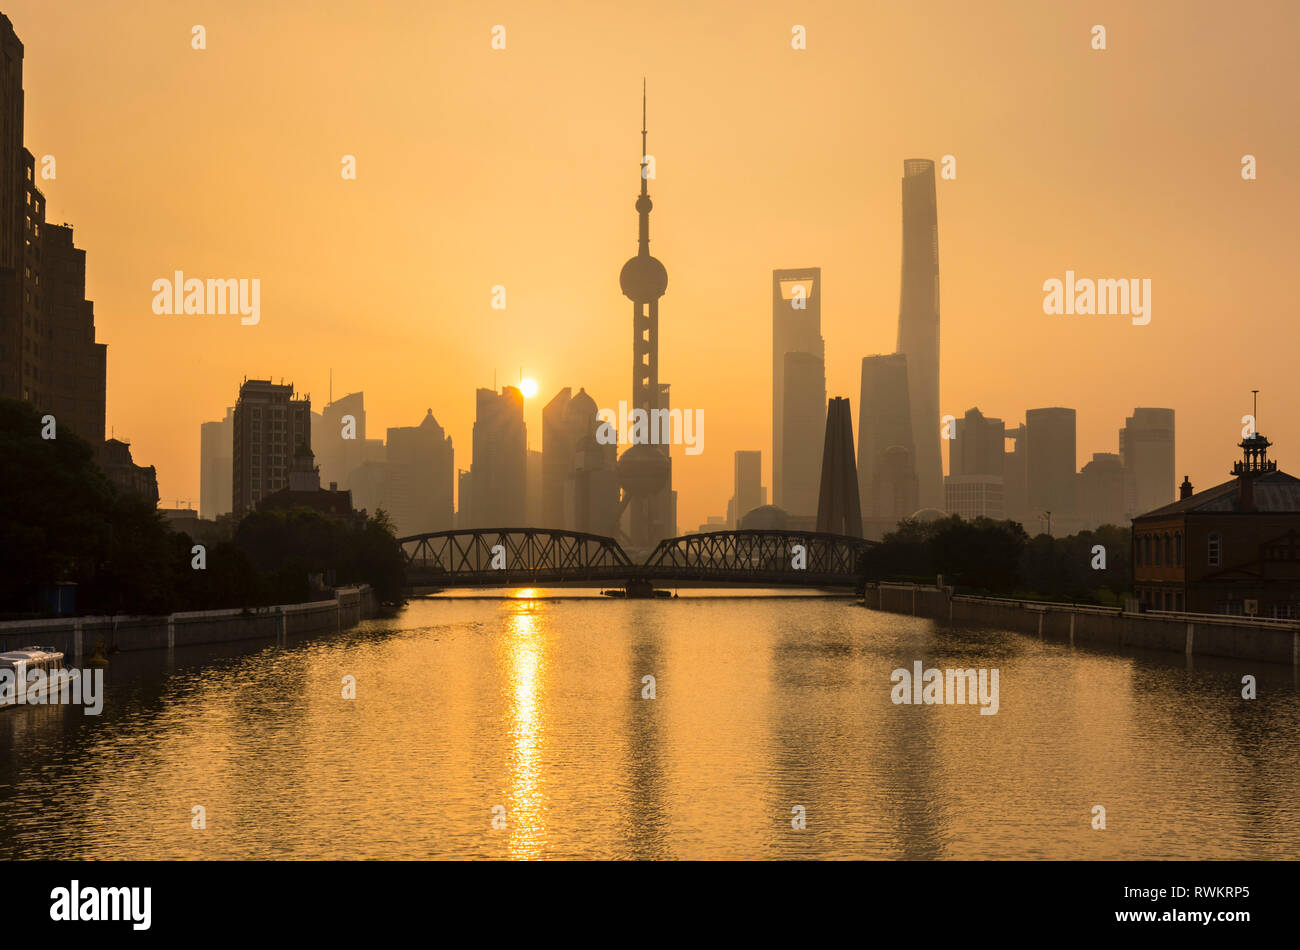 Golden sunset over Waibaidu Bridge and Pudong skyline, Shanghai, China Stock Photo